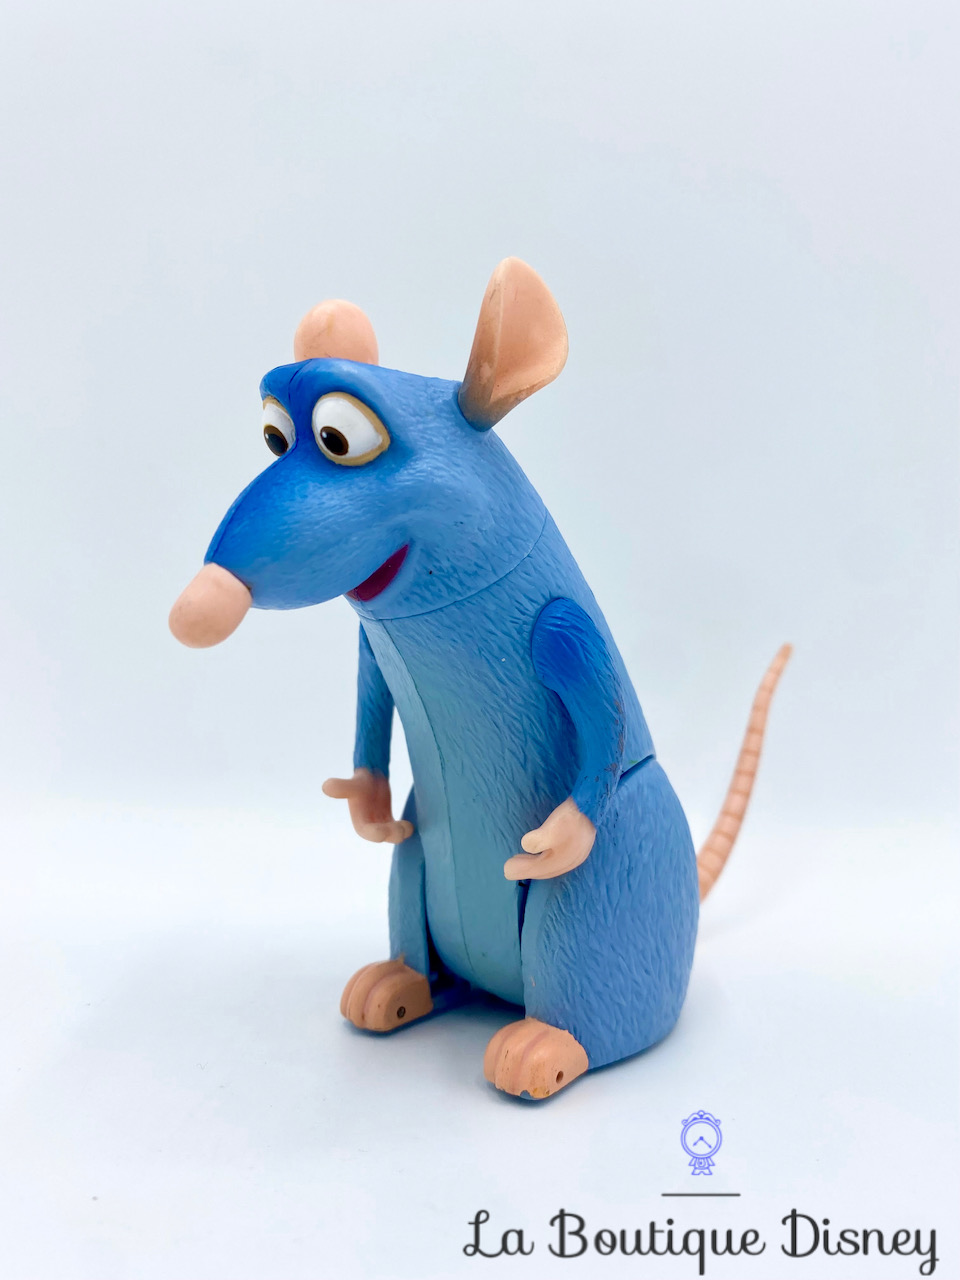 figurine-remy-ratatouille-disney-pixar-souris-rat-bleu-roulette-13-cm-5